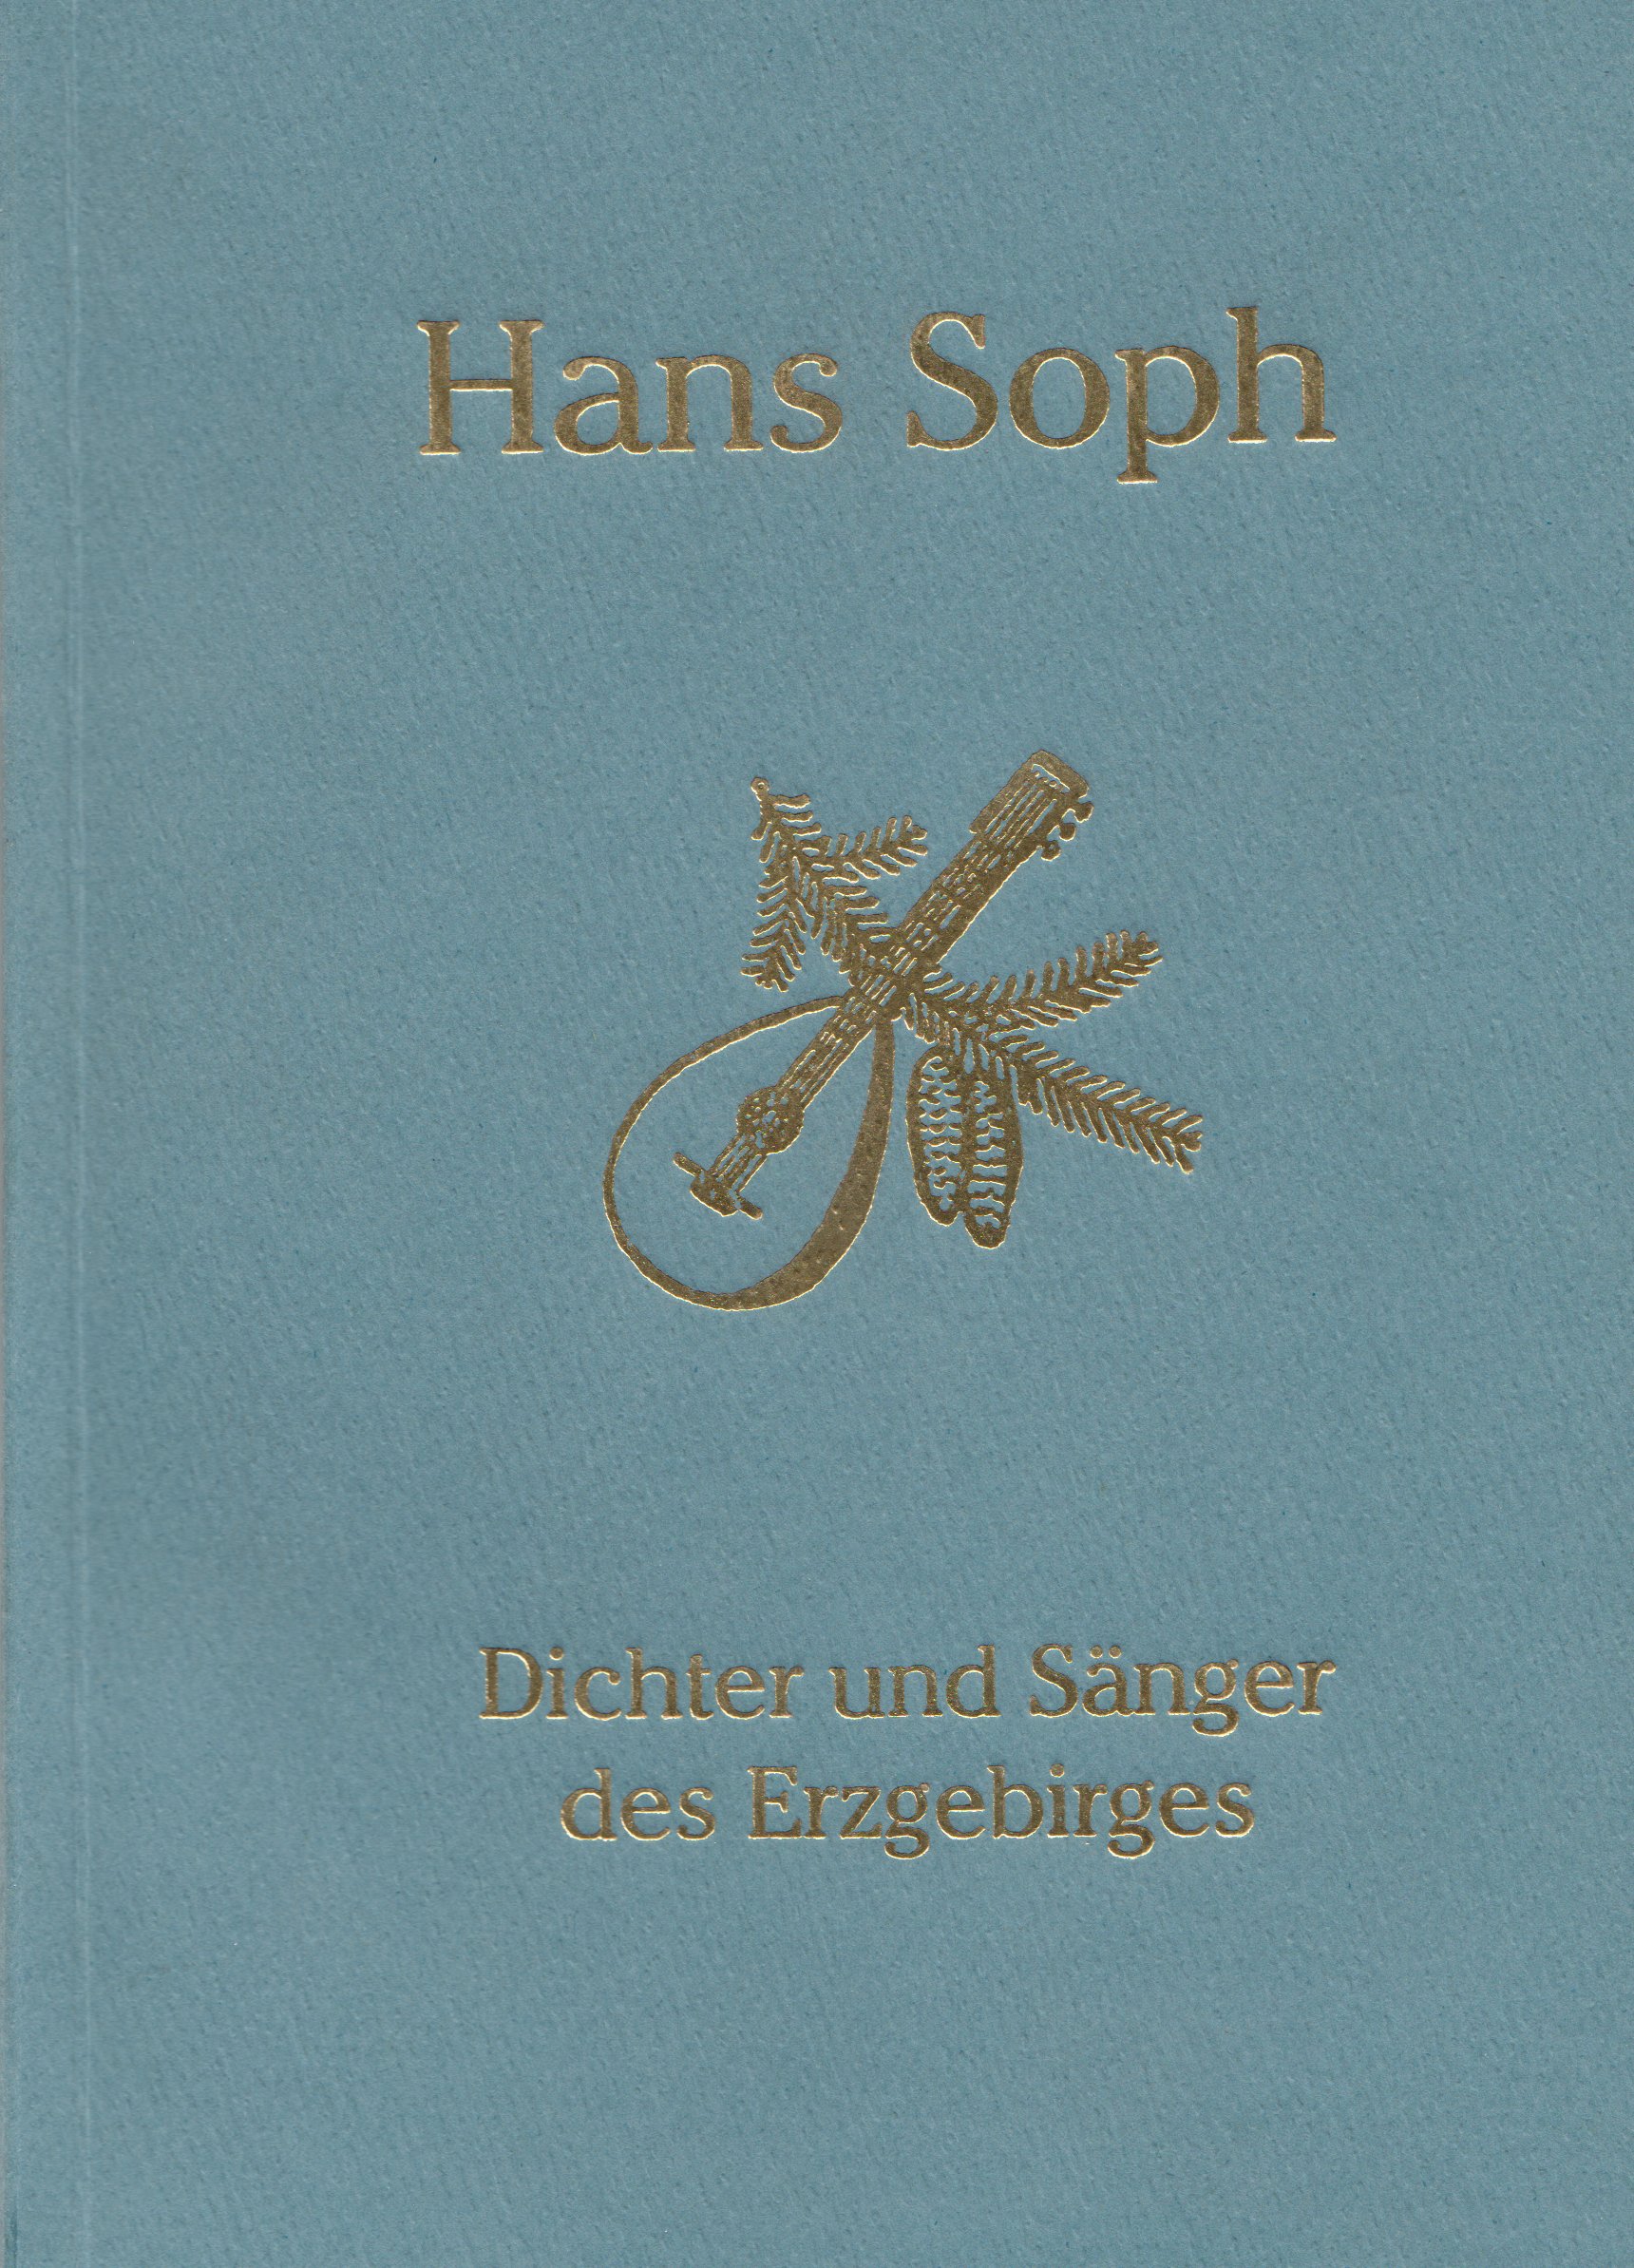 Hans Soph - Dichter und Sänger des Erzgebirges (Archiv SAXONIA-FREIBERG-STIFTUNG CC BY-NC-SA)